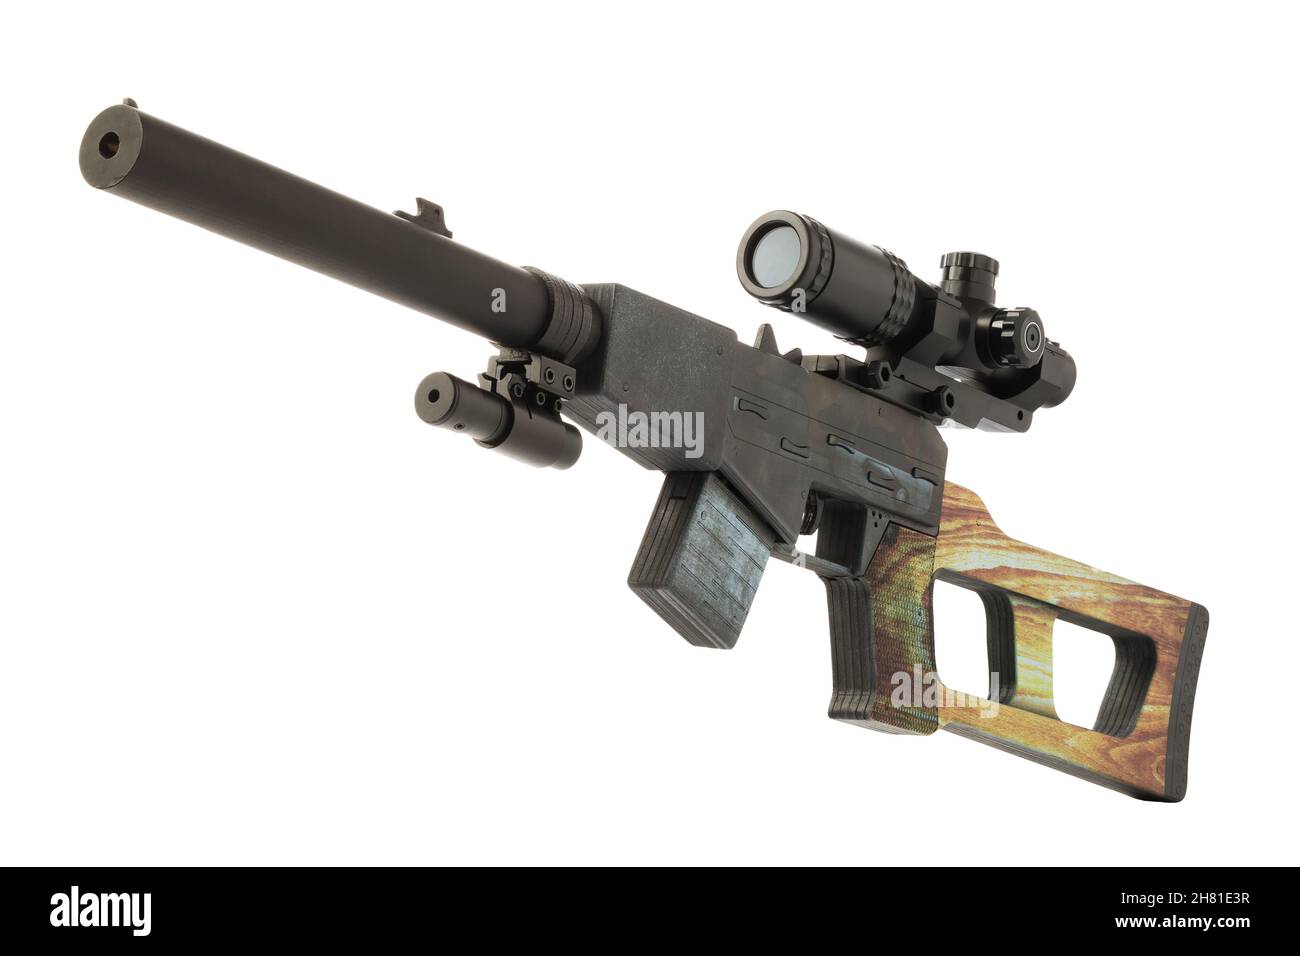 Spezielles Scharfschützengewehr aus Holz mit Teleskopsicht und Laserpointer isoliert auf weißem Hintergrund Stockfoto